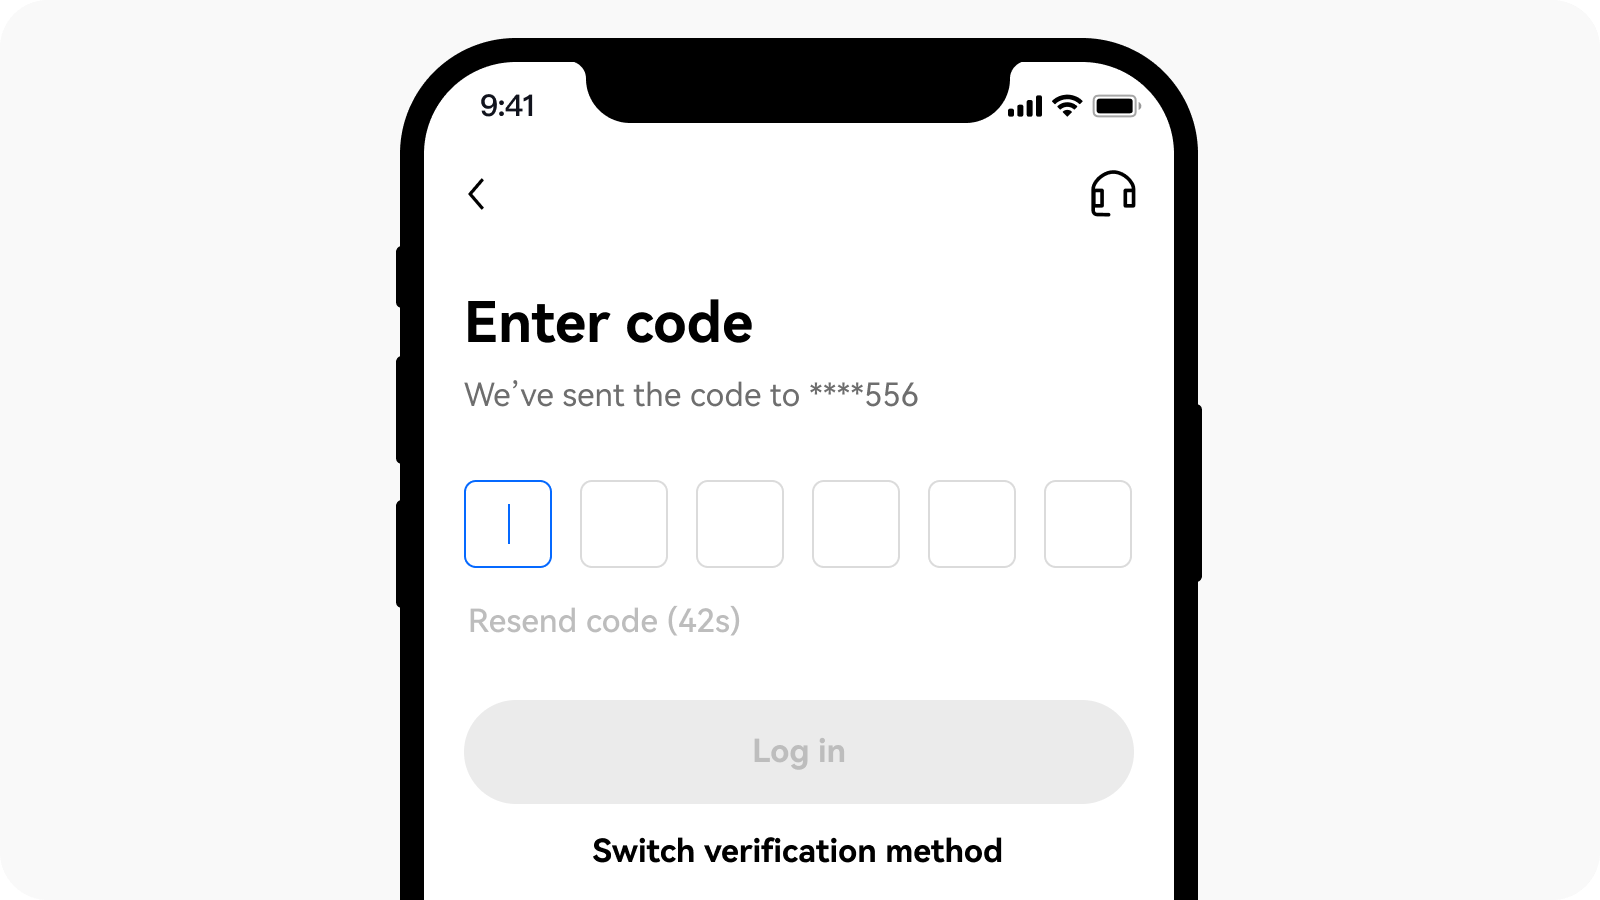 Enter Code via phone in App